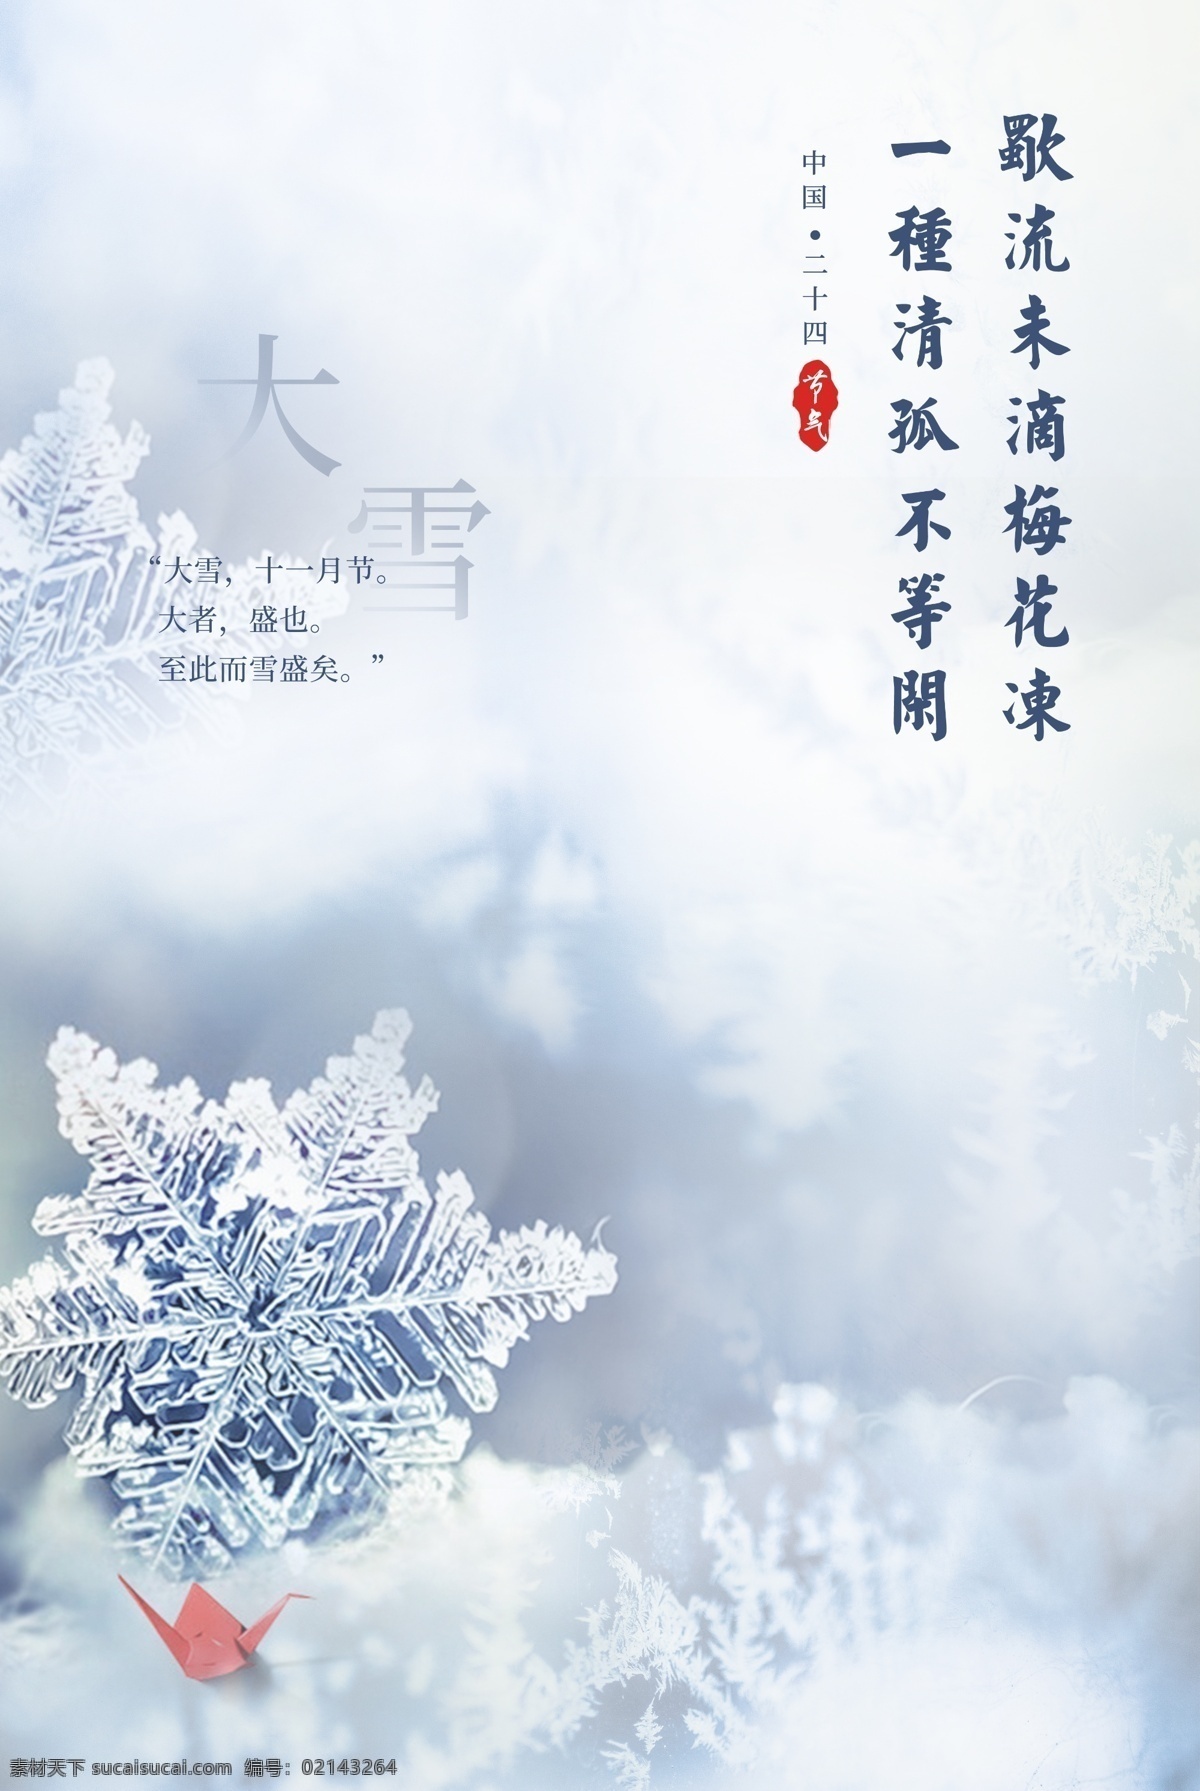 大雪图片 大雪 唯美 传统文化 招贴设计 写实风格 节气海报